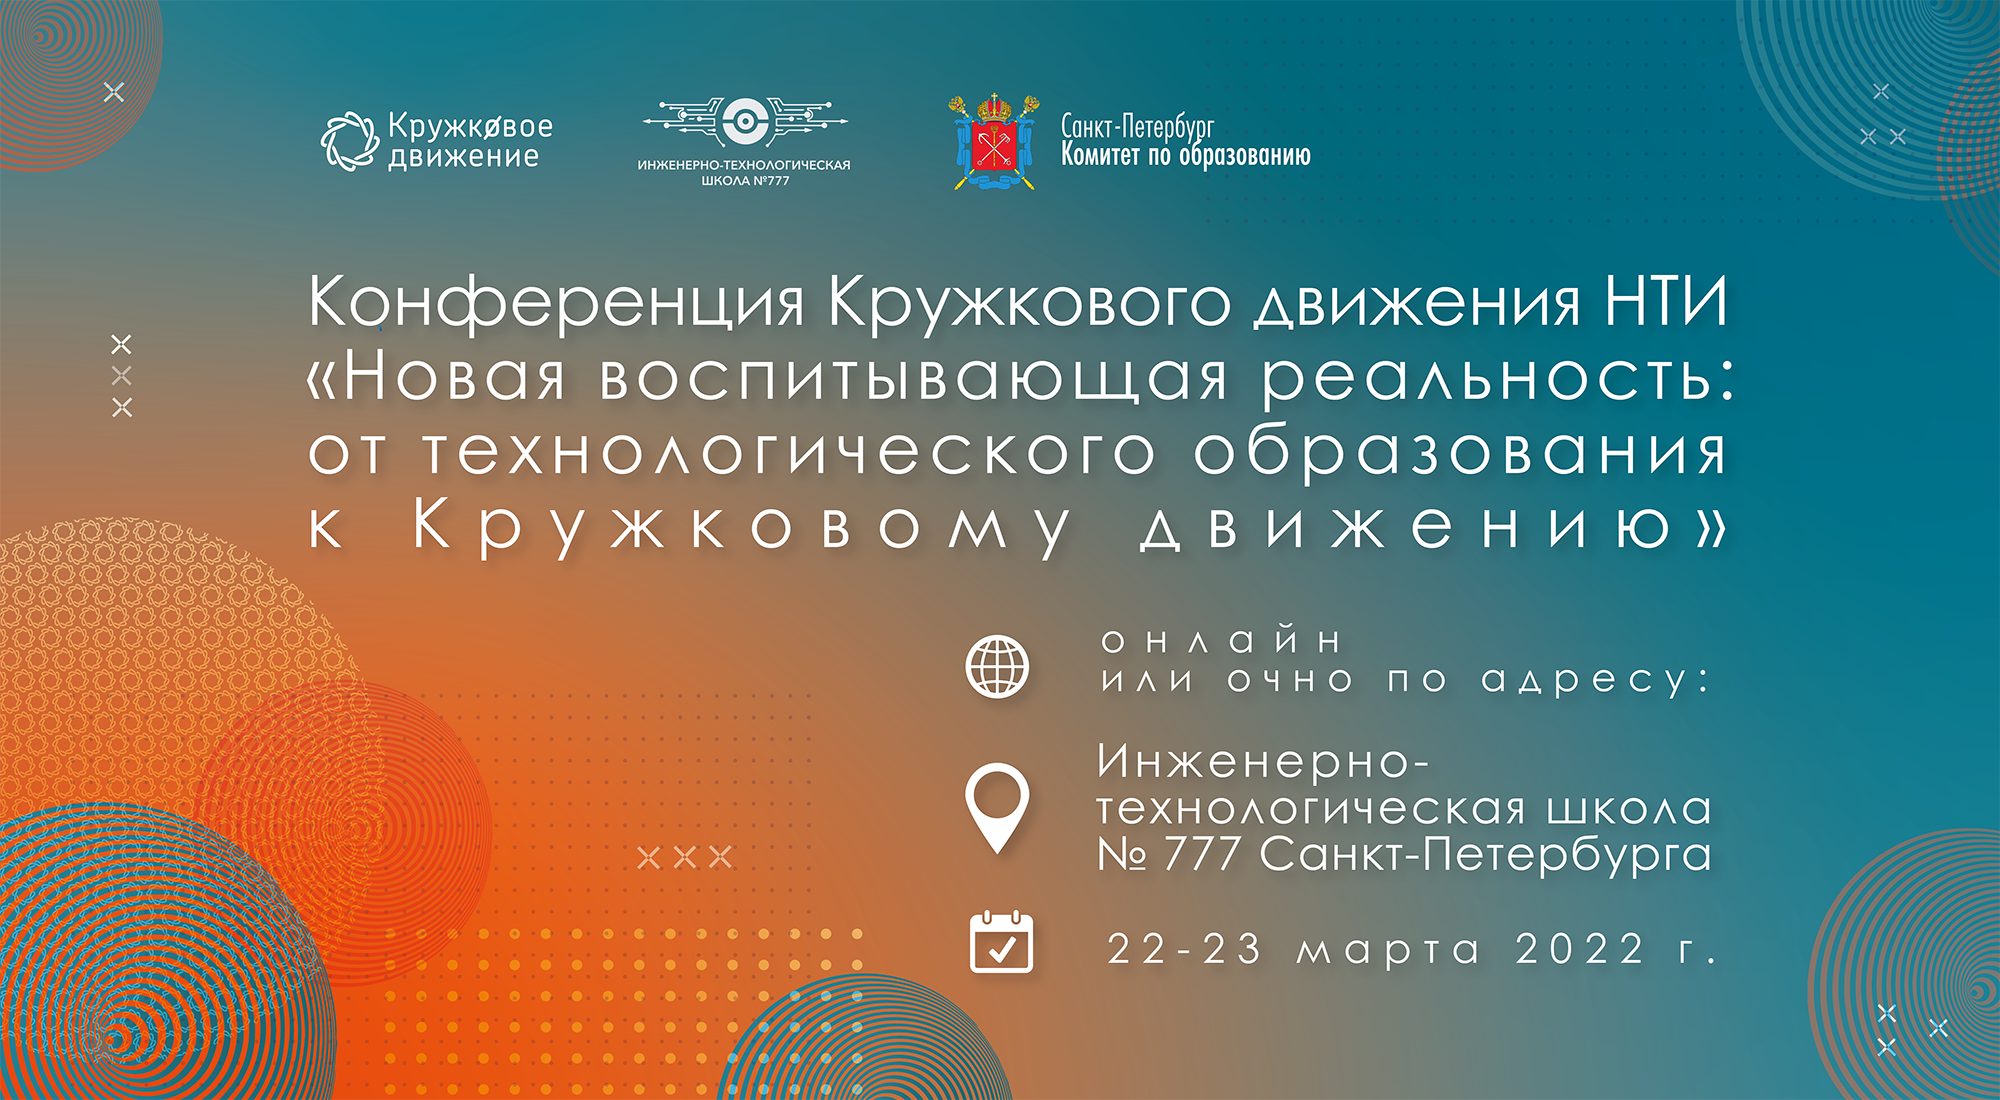 Конференция Кружкового движения НТИ состоится в Санкт‑Петербурге